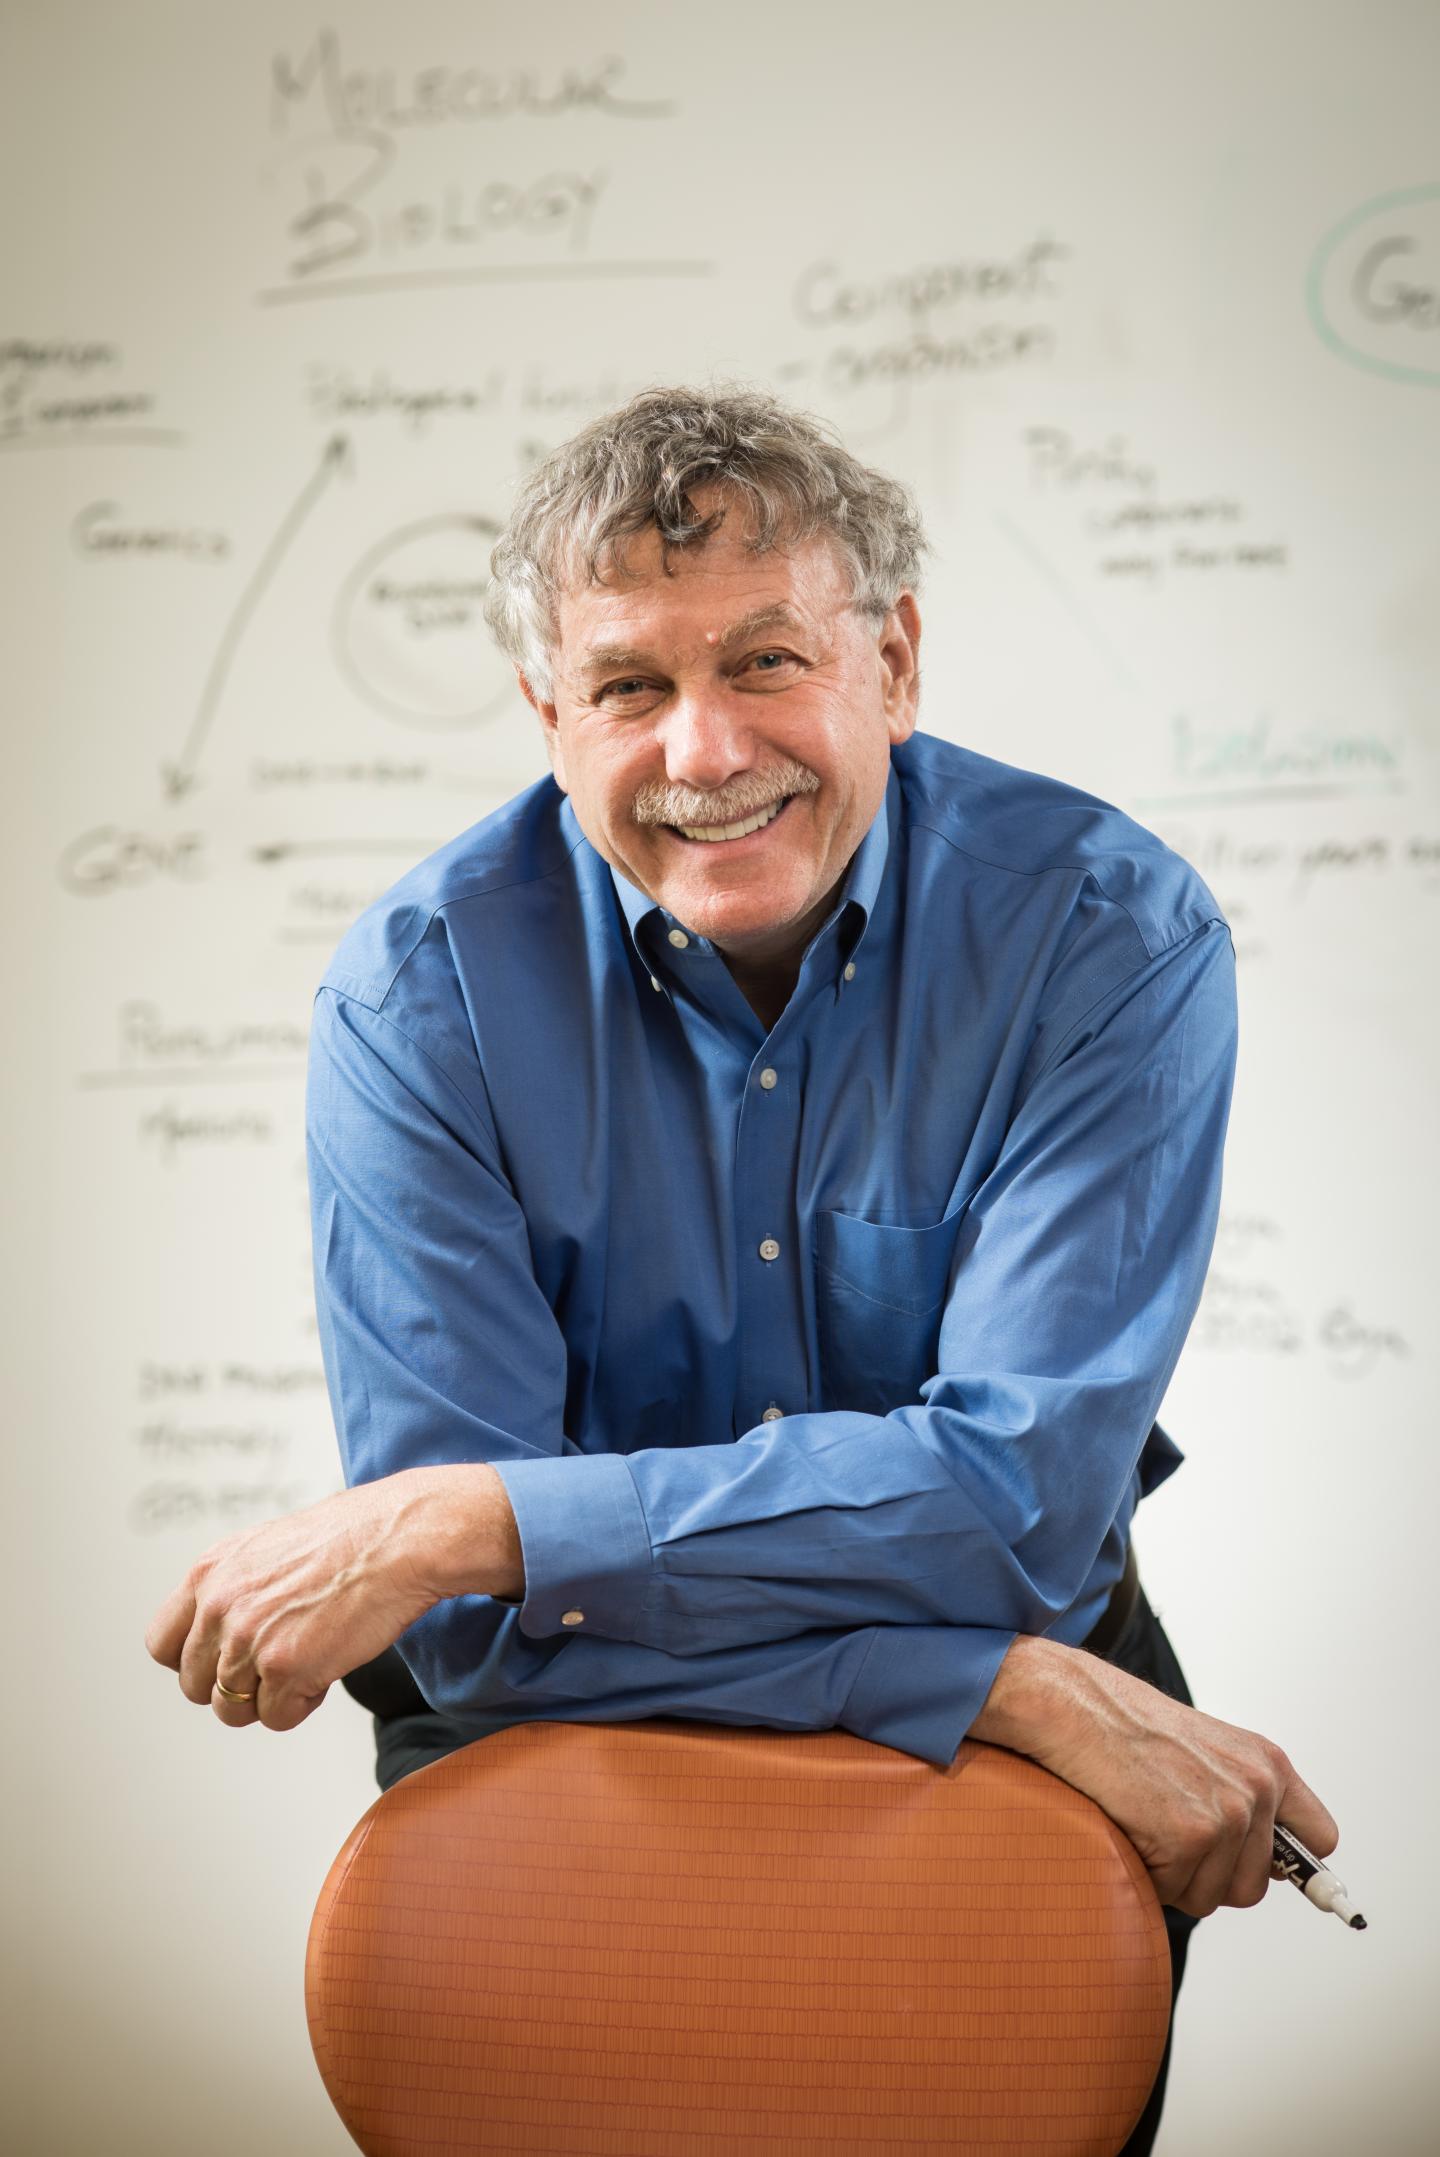 Eric Lander, Ph.D., recipient of ASHG's 2018 William Allan Award